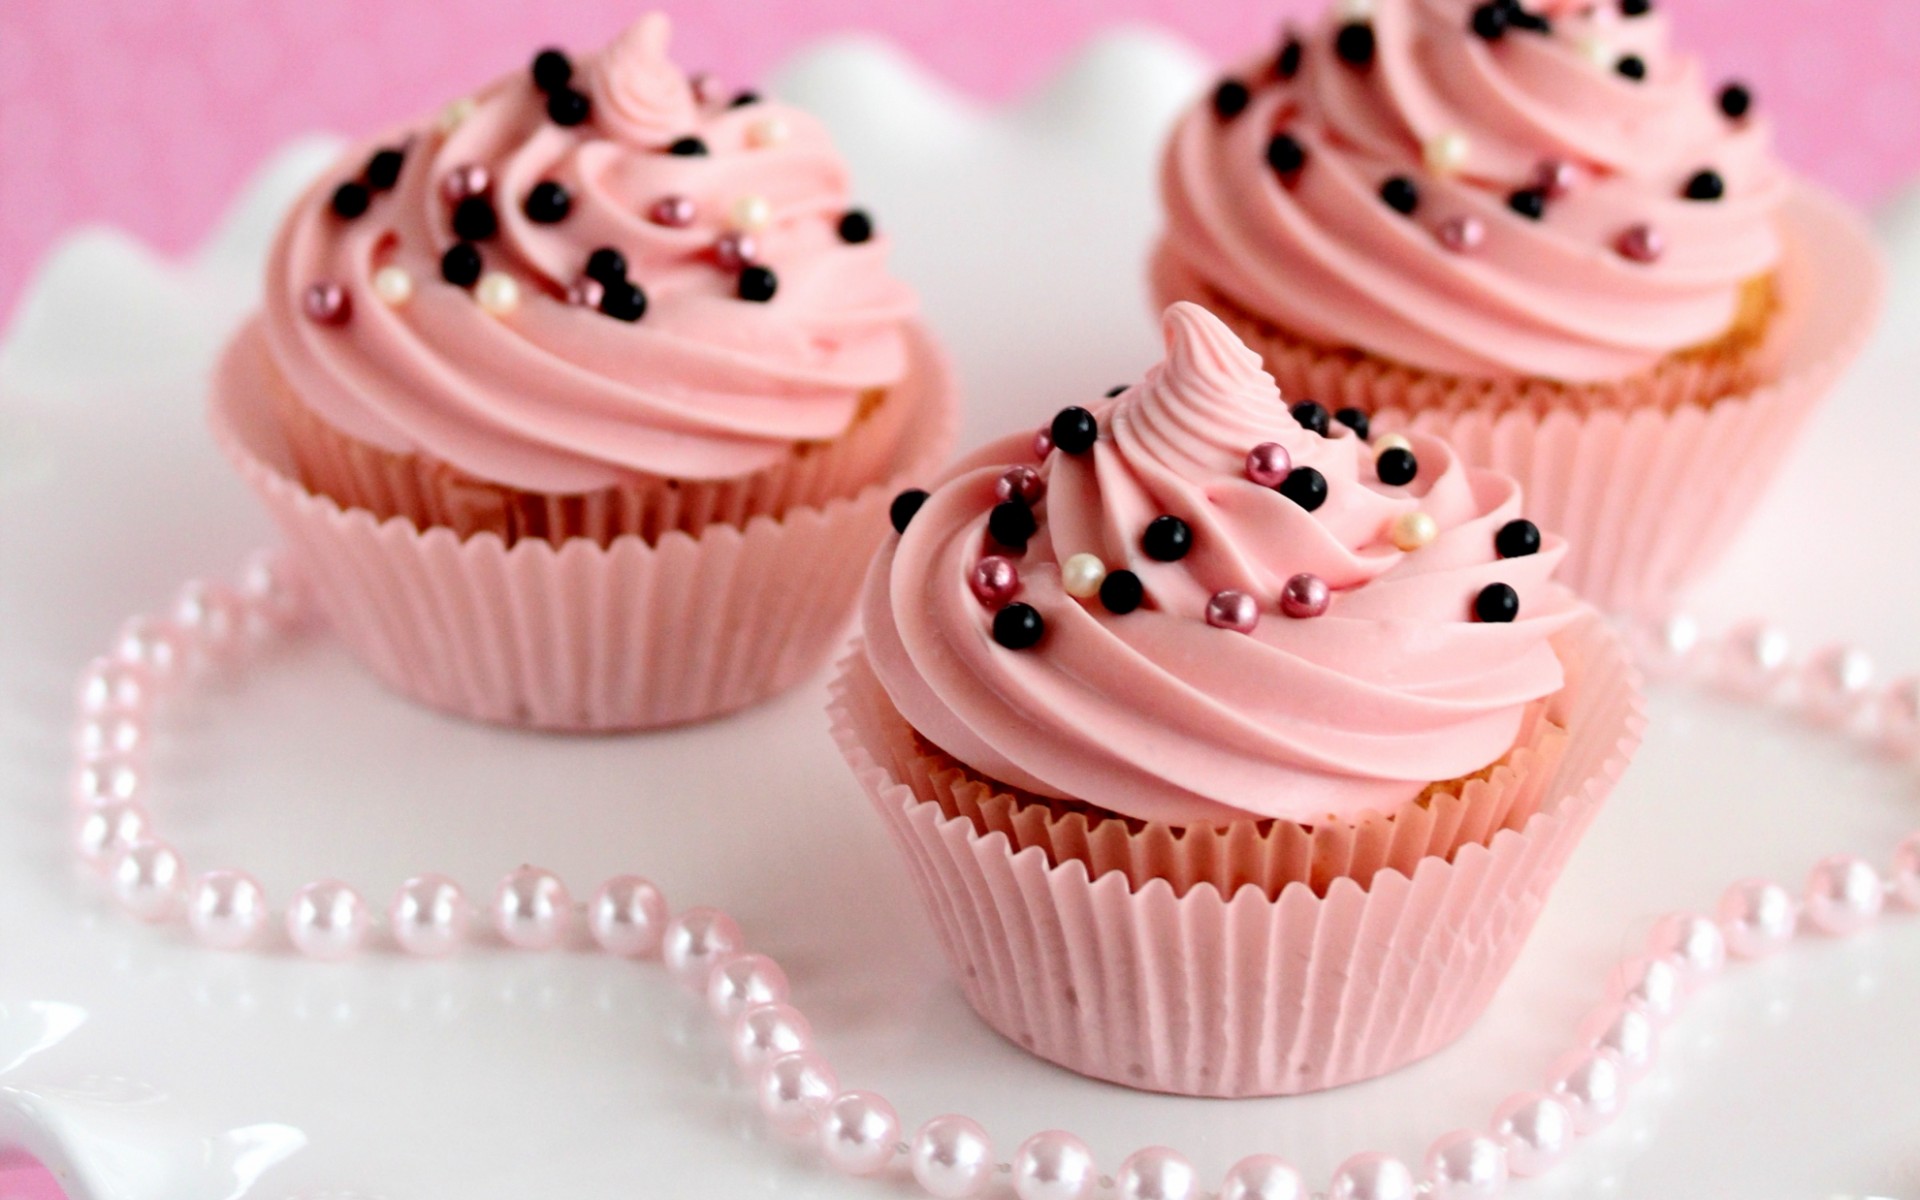 Cupcakes - Food Wallpaper (35972764) - Fanpop